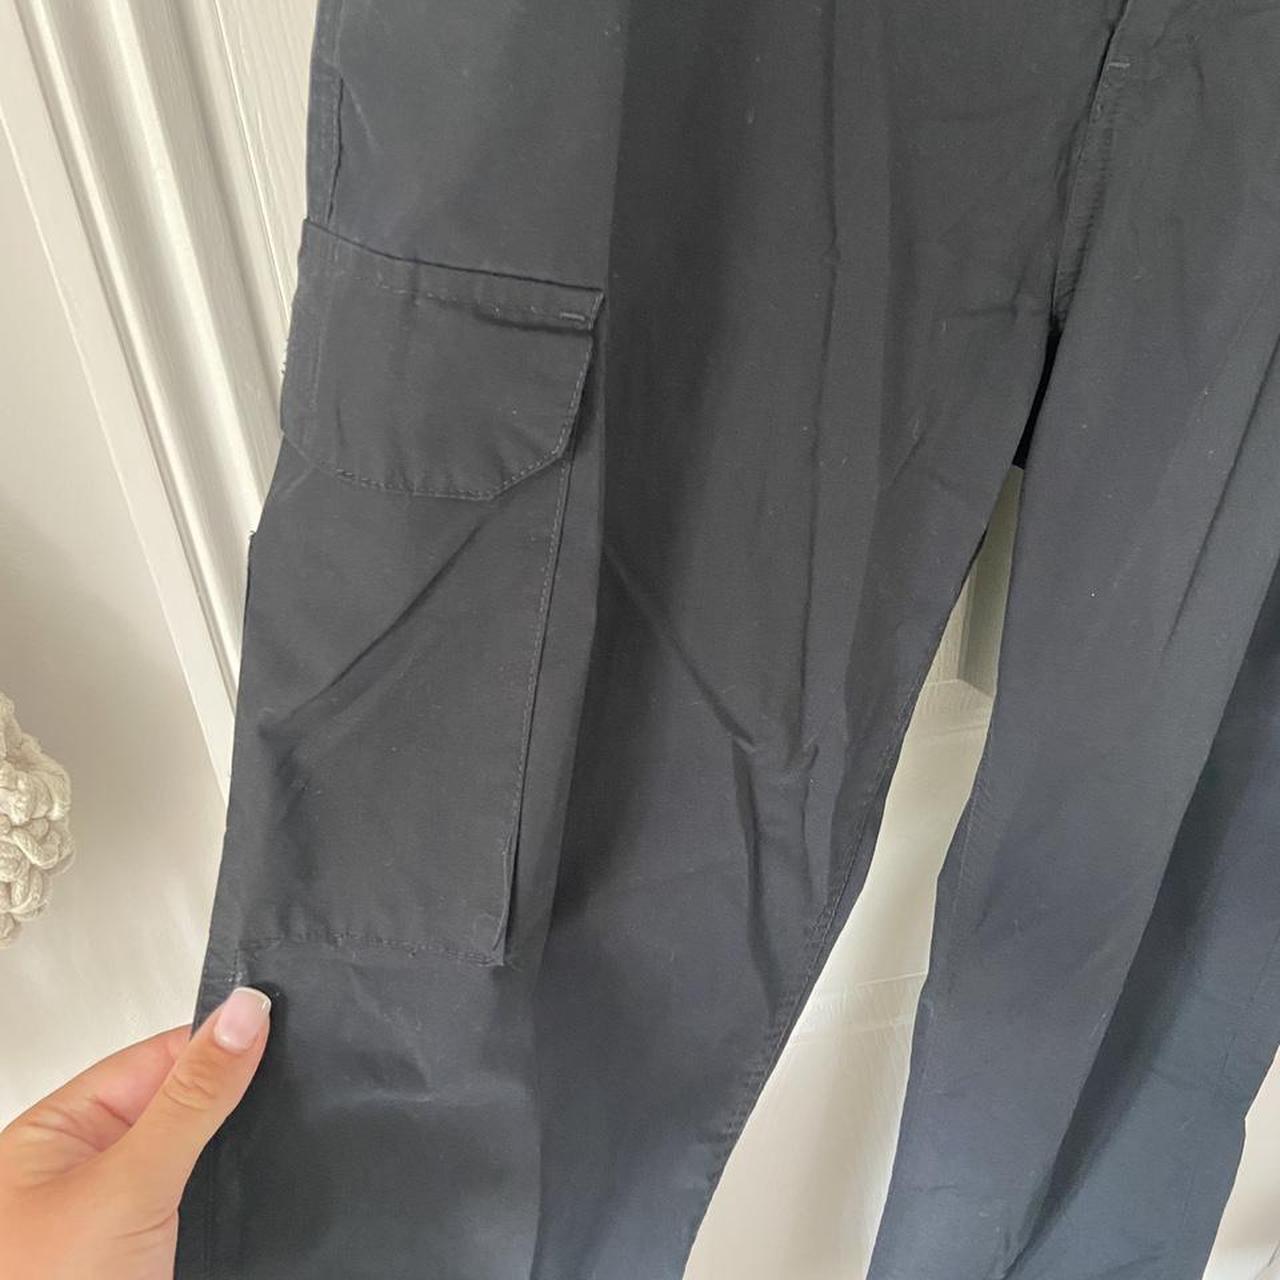 Black cargo pants/trousers - mens (size 38R) but... - Depop